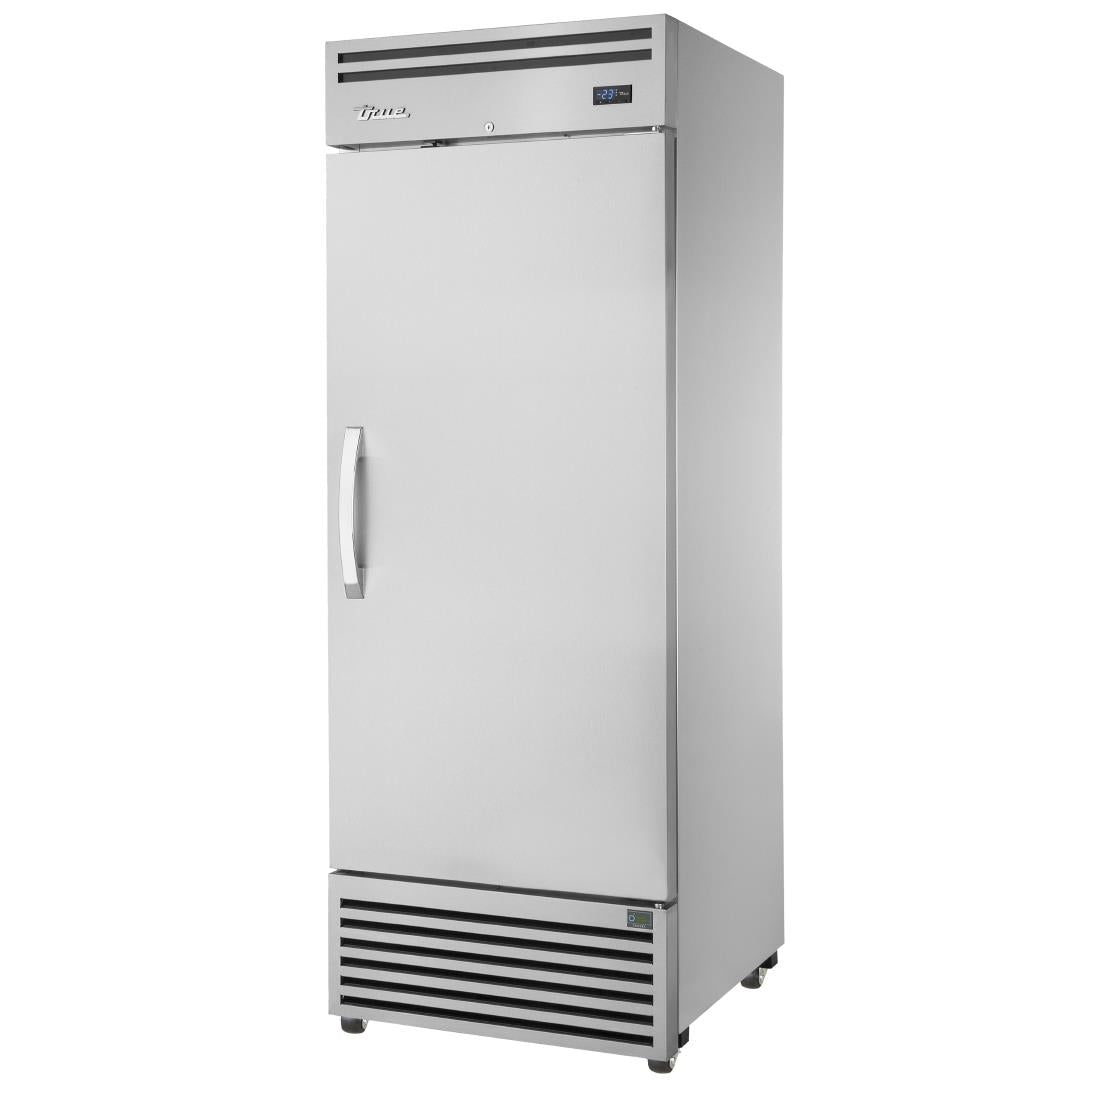 FA033 True 2/1 GN Upright Freezer TGN-1F-1S JD Catering Equipment Solutions Ltd